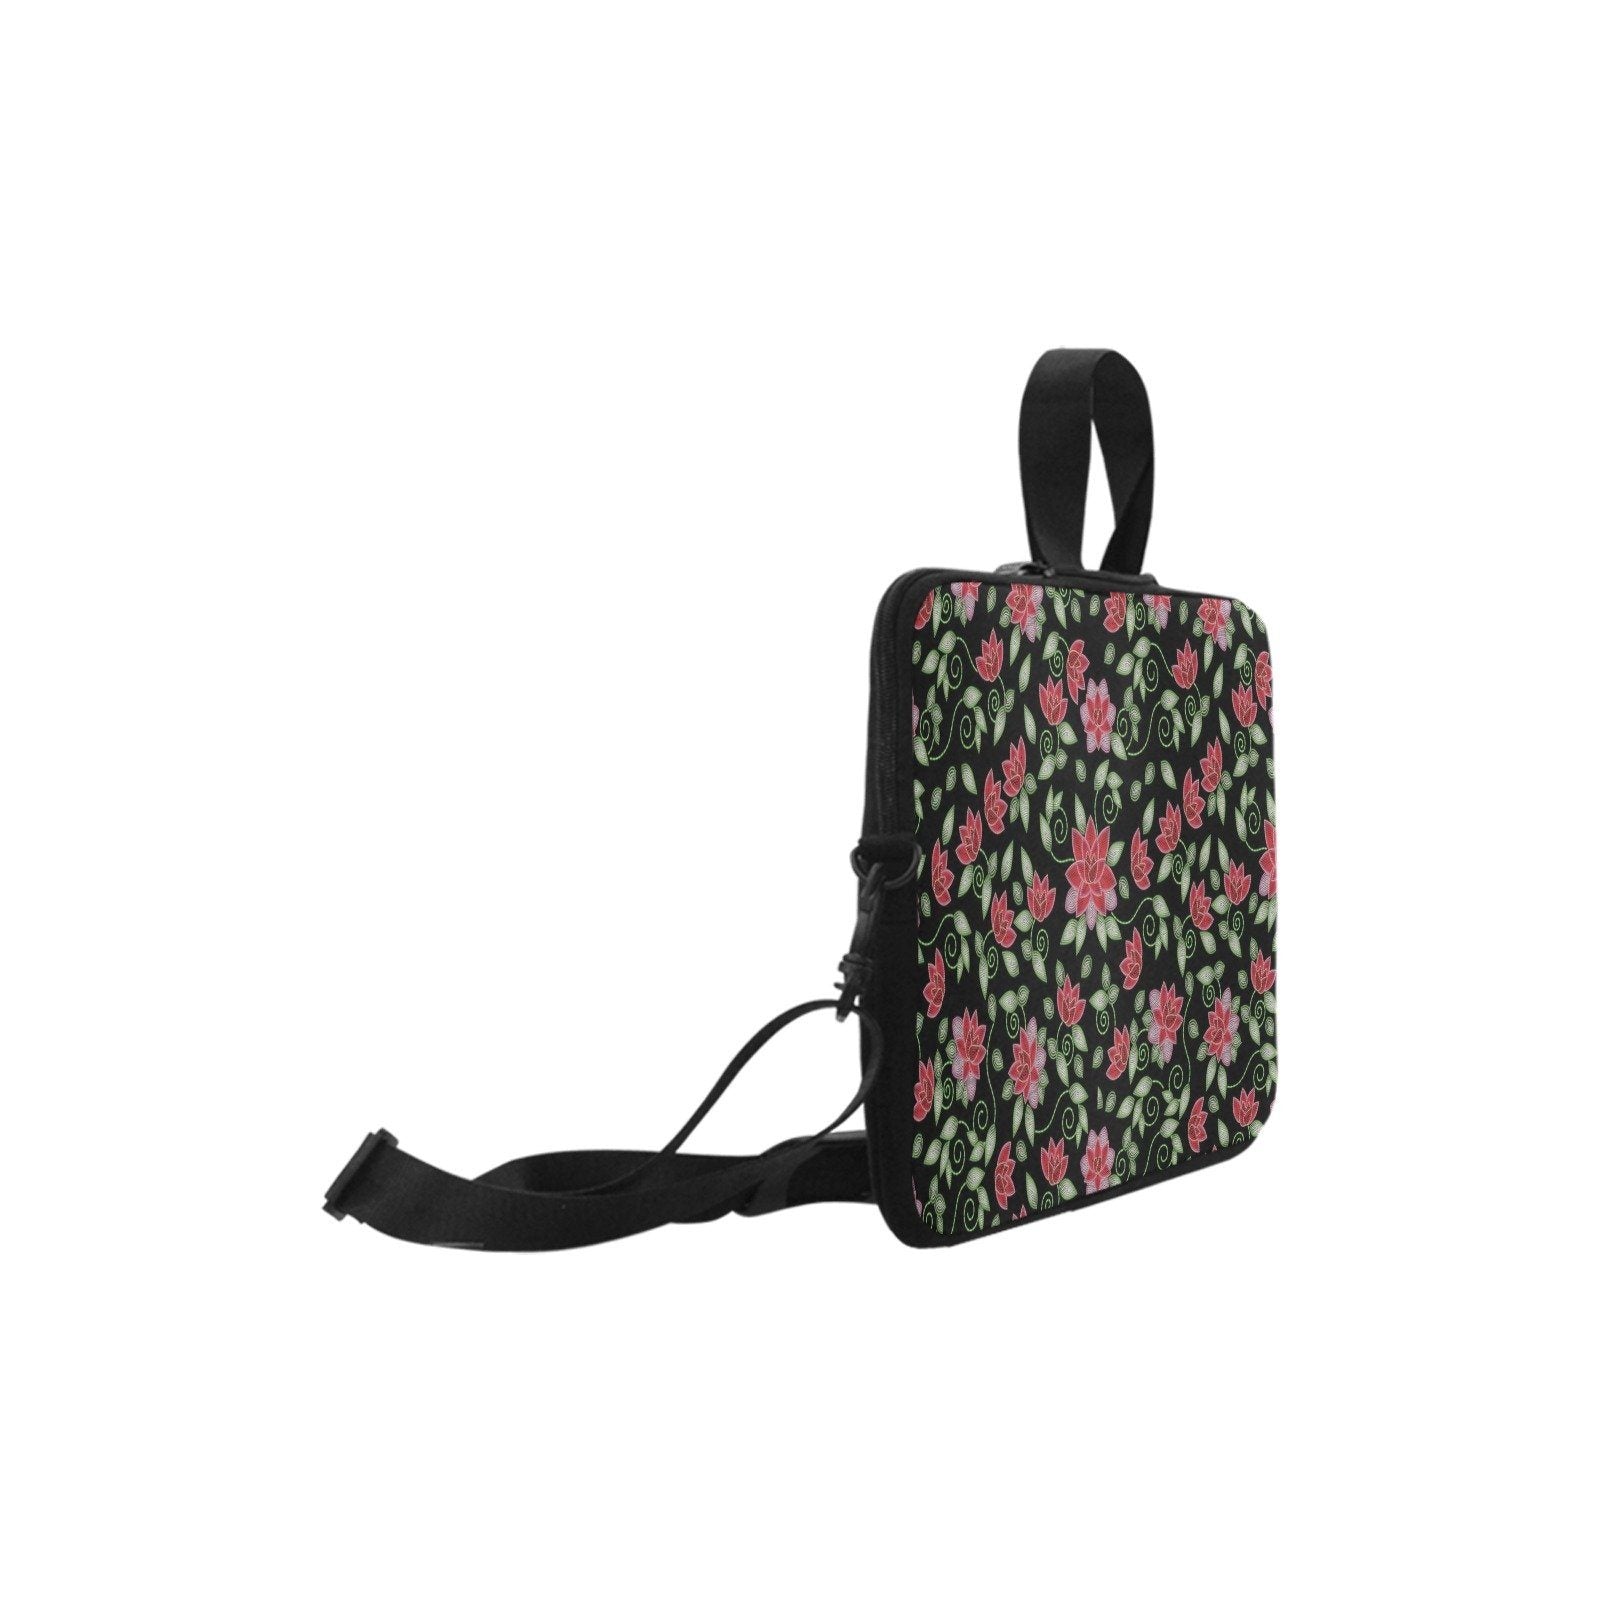 Red Beaded Rose Laptop Handbags 11" bag e-joyer 